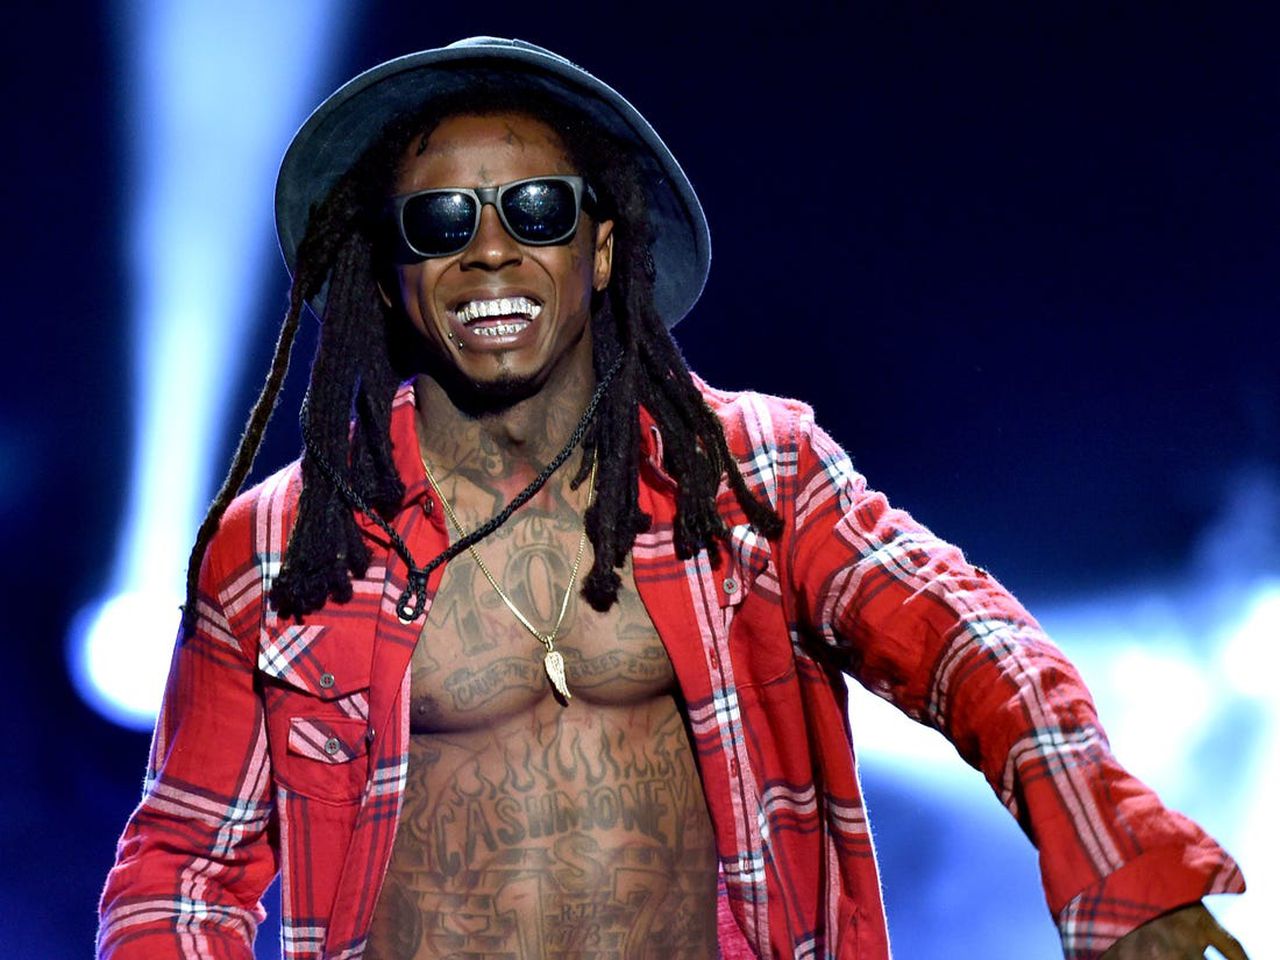 Lil Wayne drops a new surprise for fans